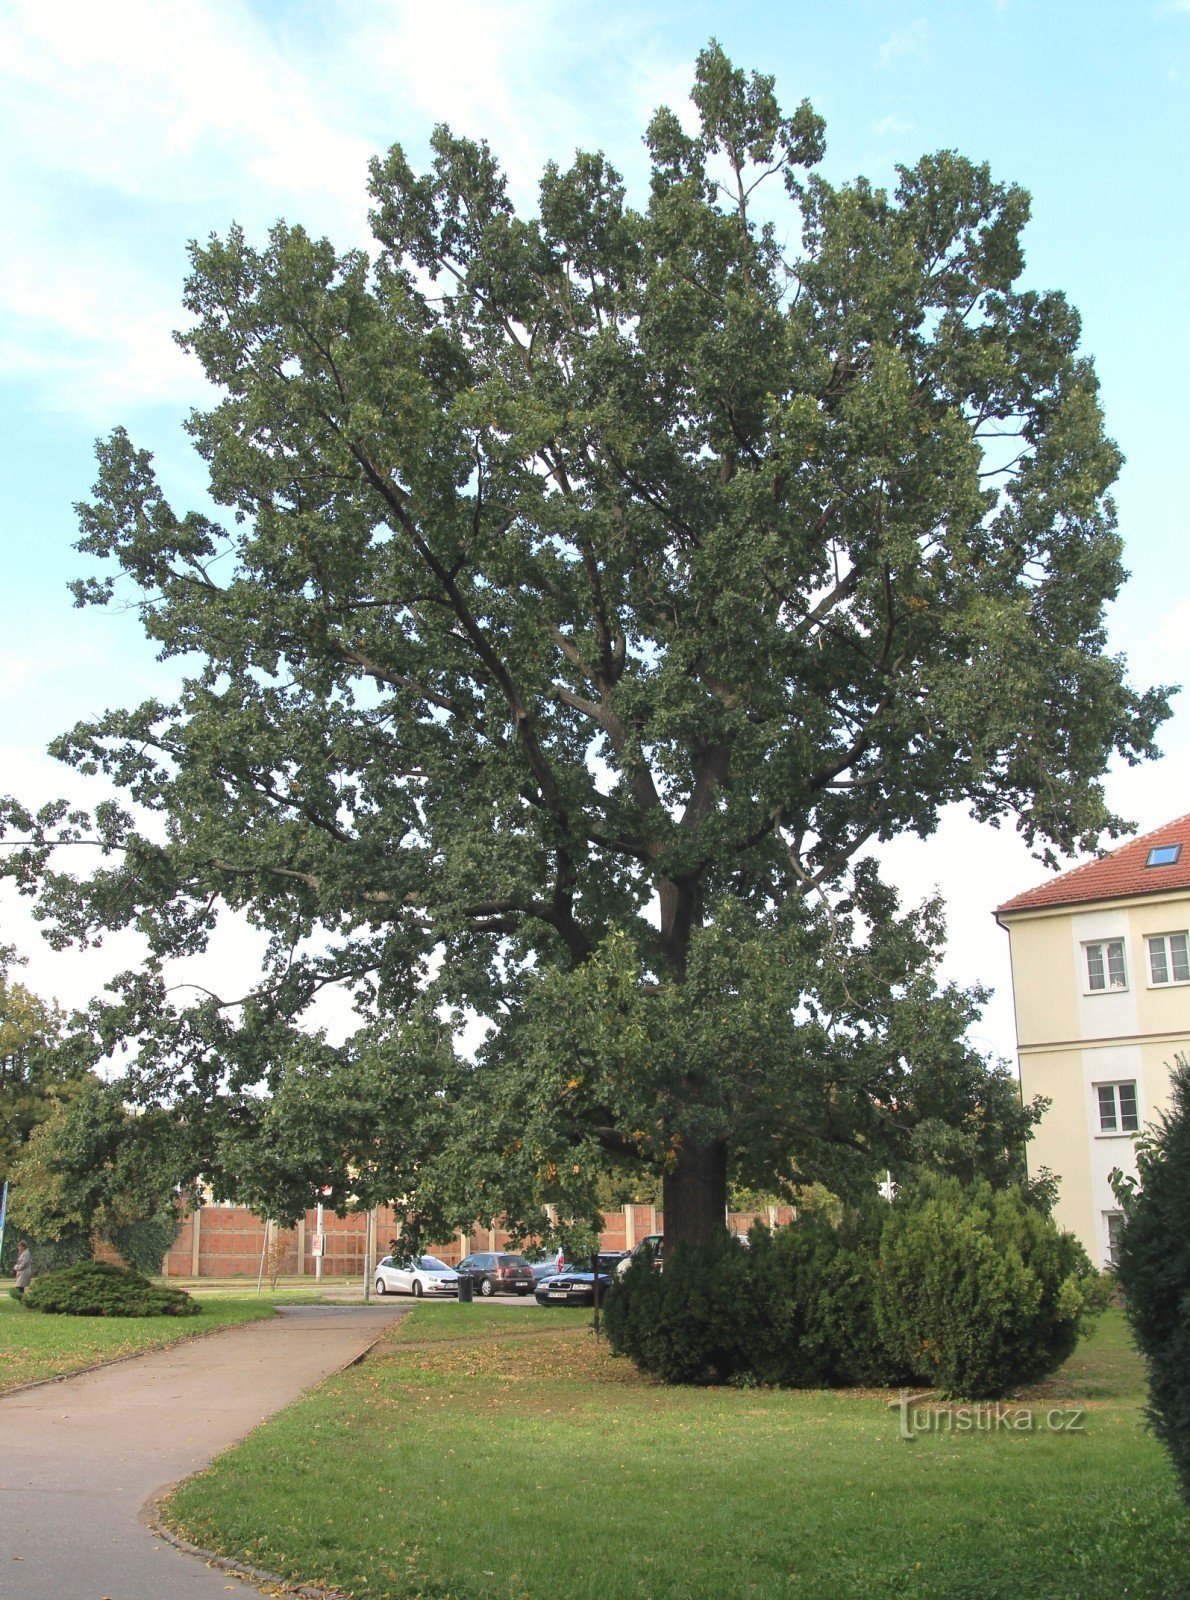 Brno-Komárov - cây sồi gần nhà thờ St. Hoa loa kèn